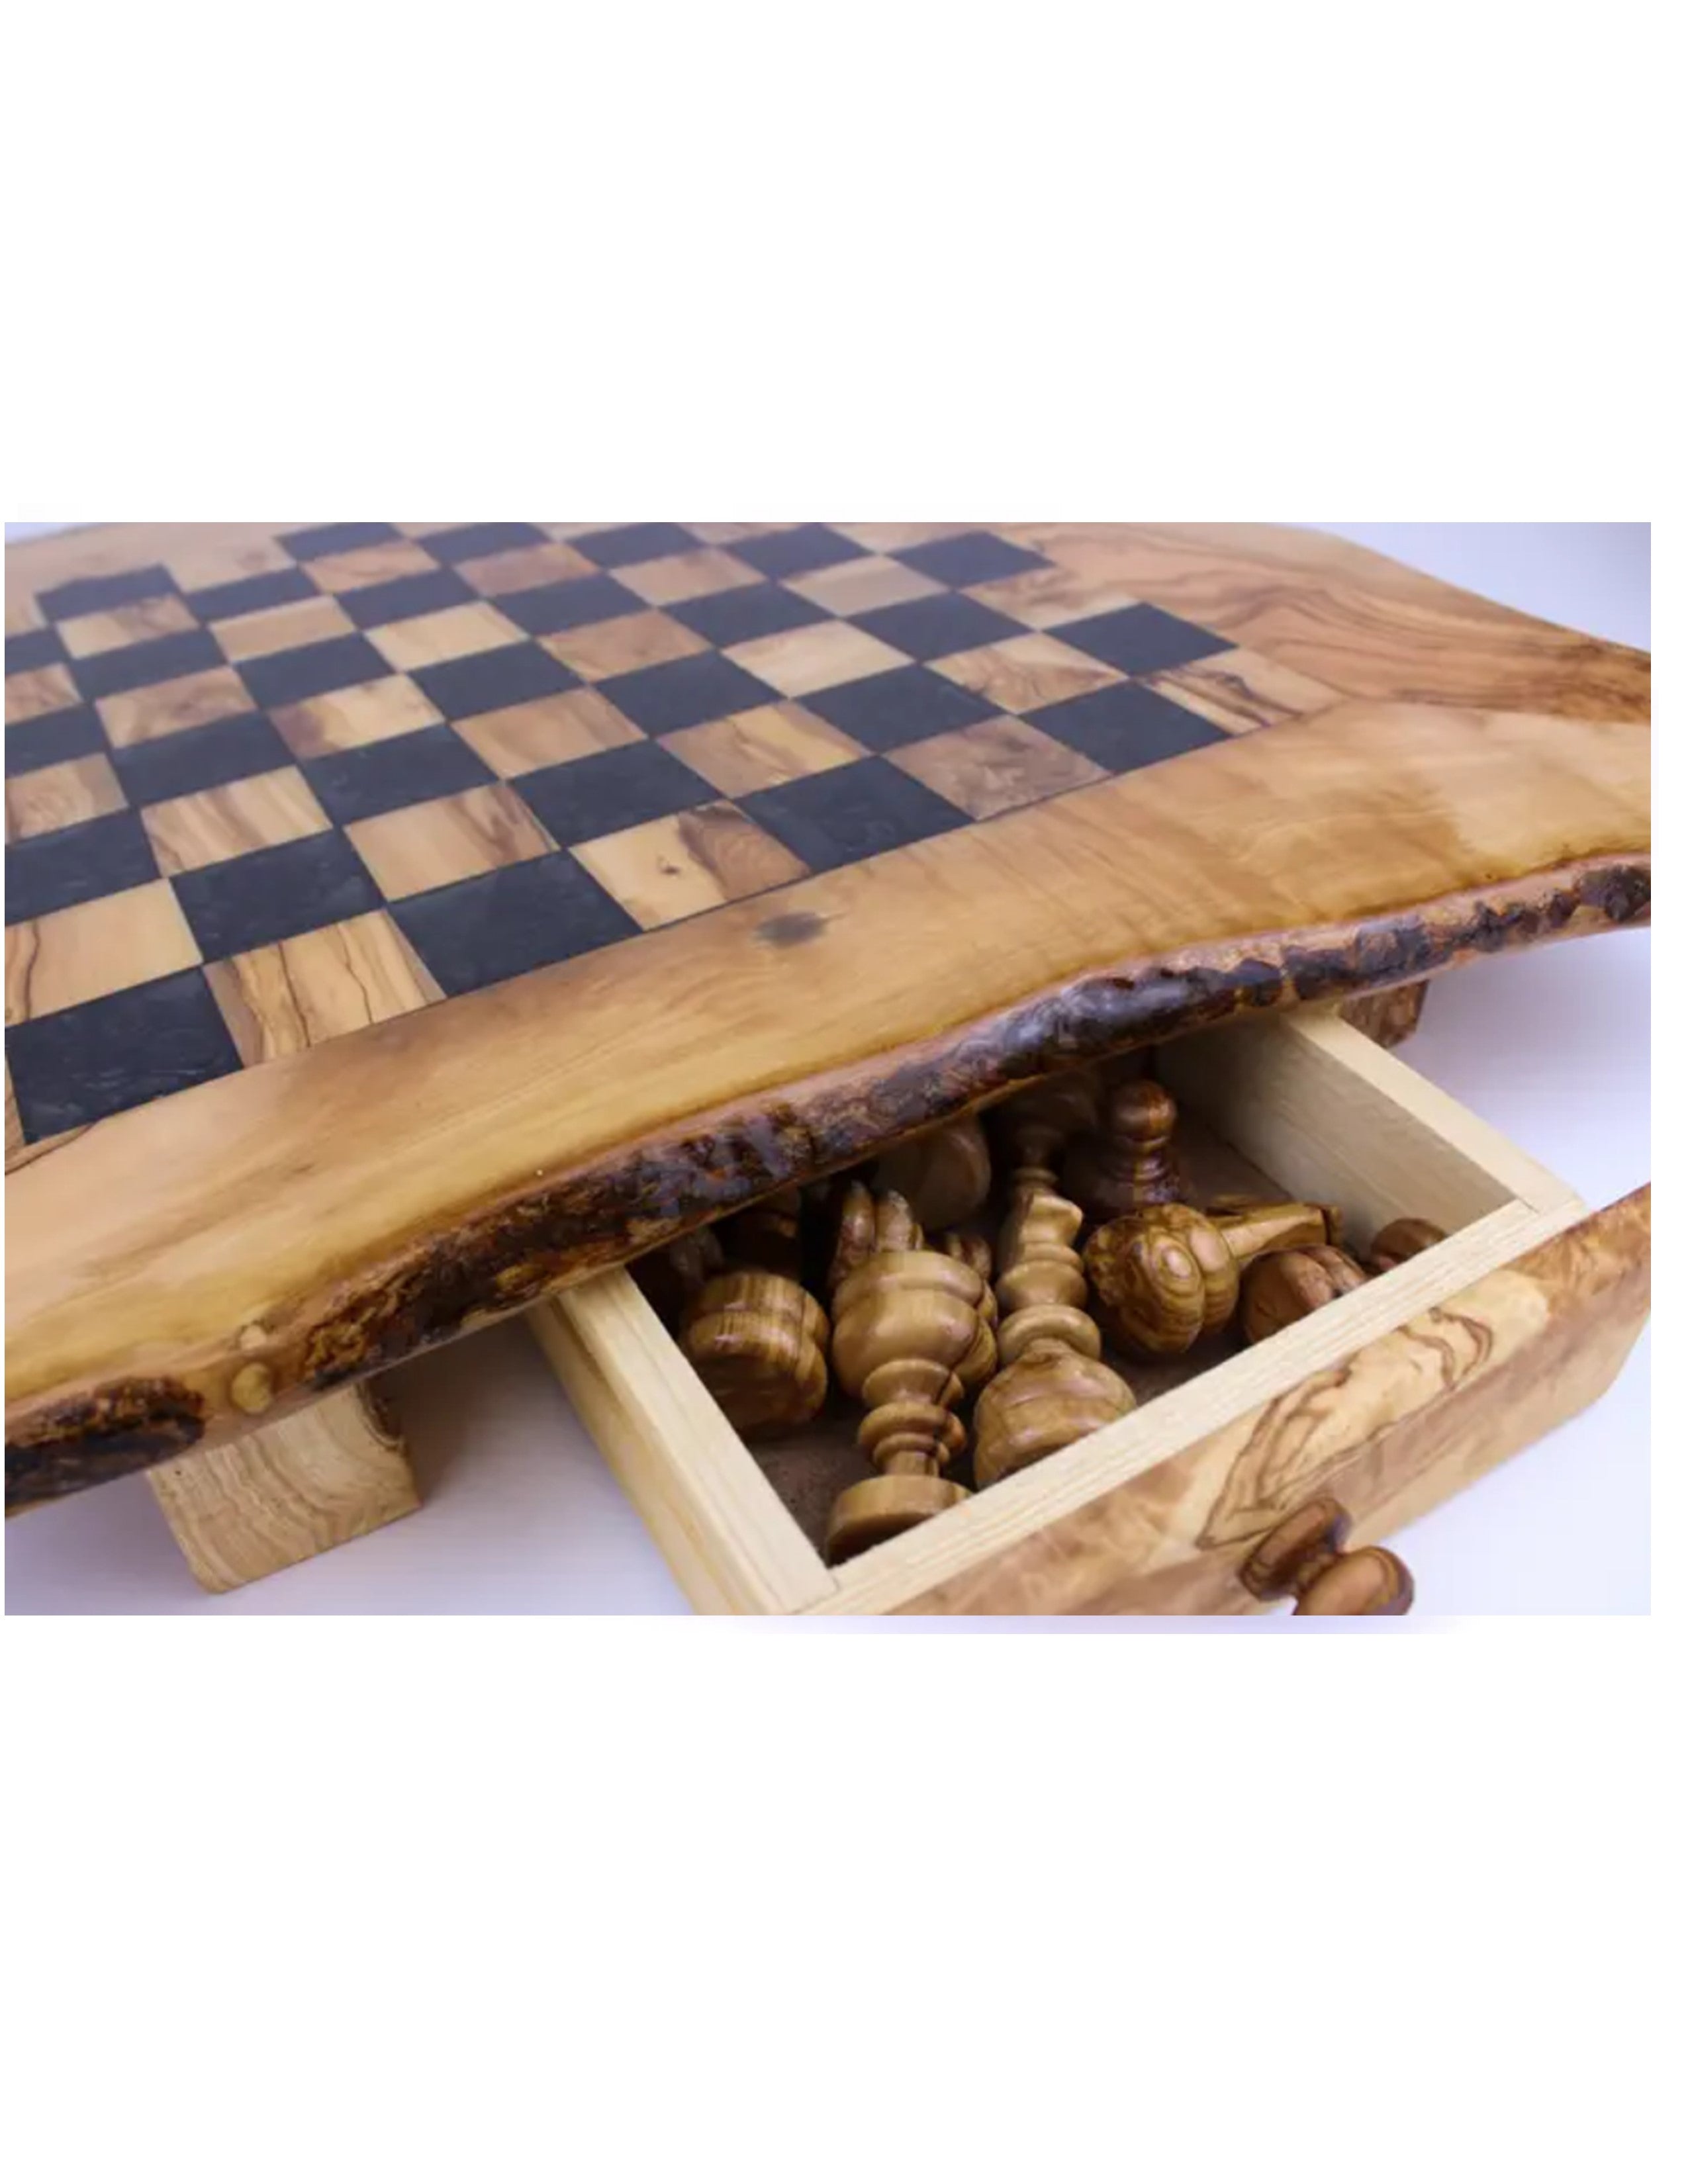 Olive Wood Resin Chess Board - Viva Oliva